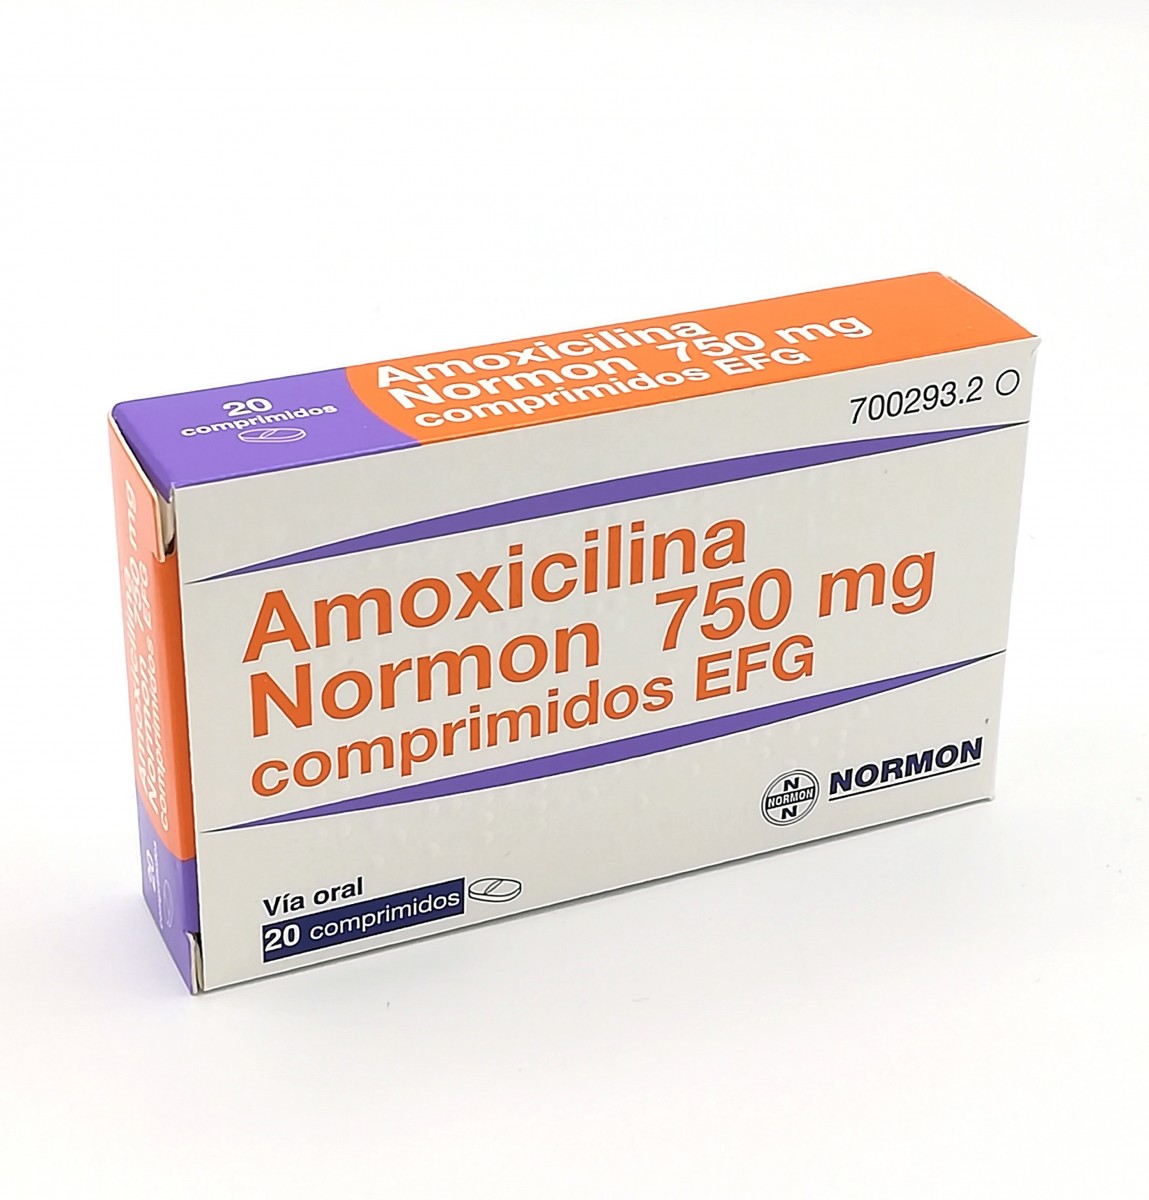 Asia Seminario Oso polar AMOXICILINA NORMON 750 MG COMPRIMIDOS EFG , 12 comprimidos. Precio: 2.89€.